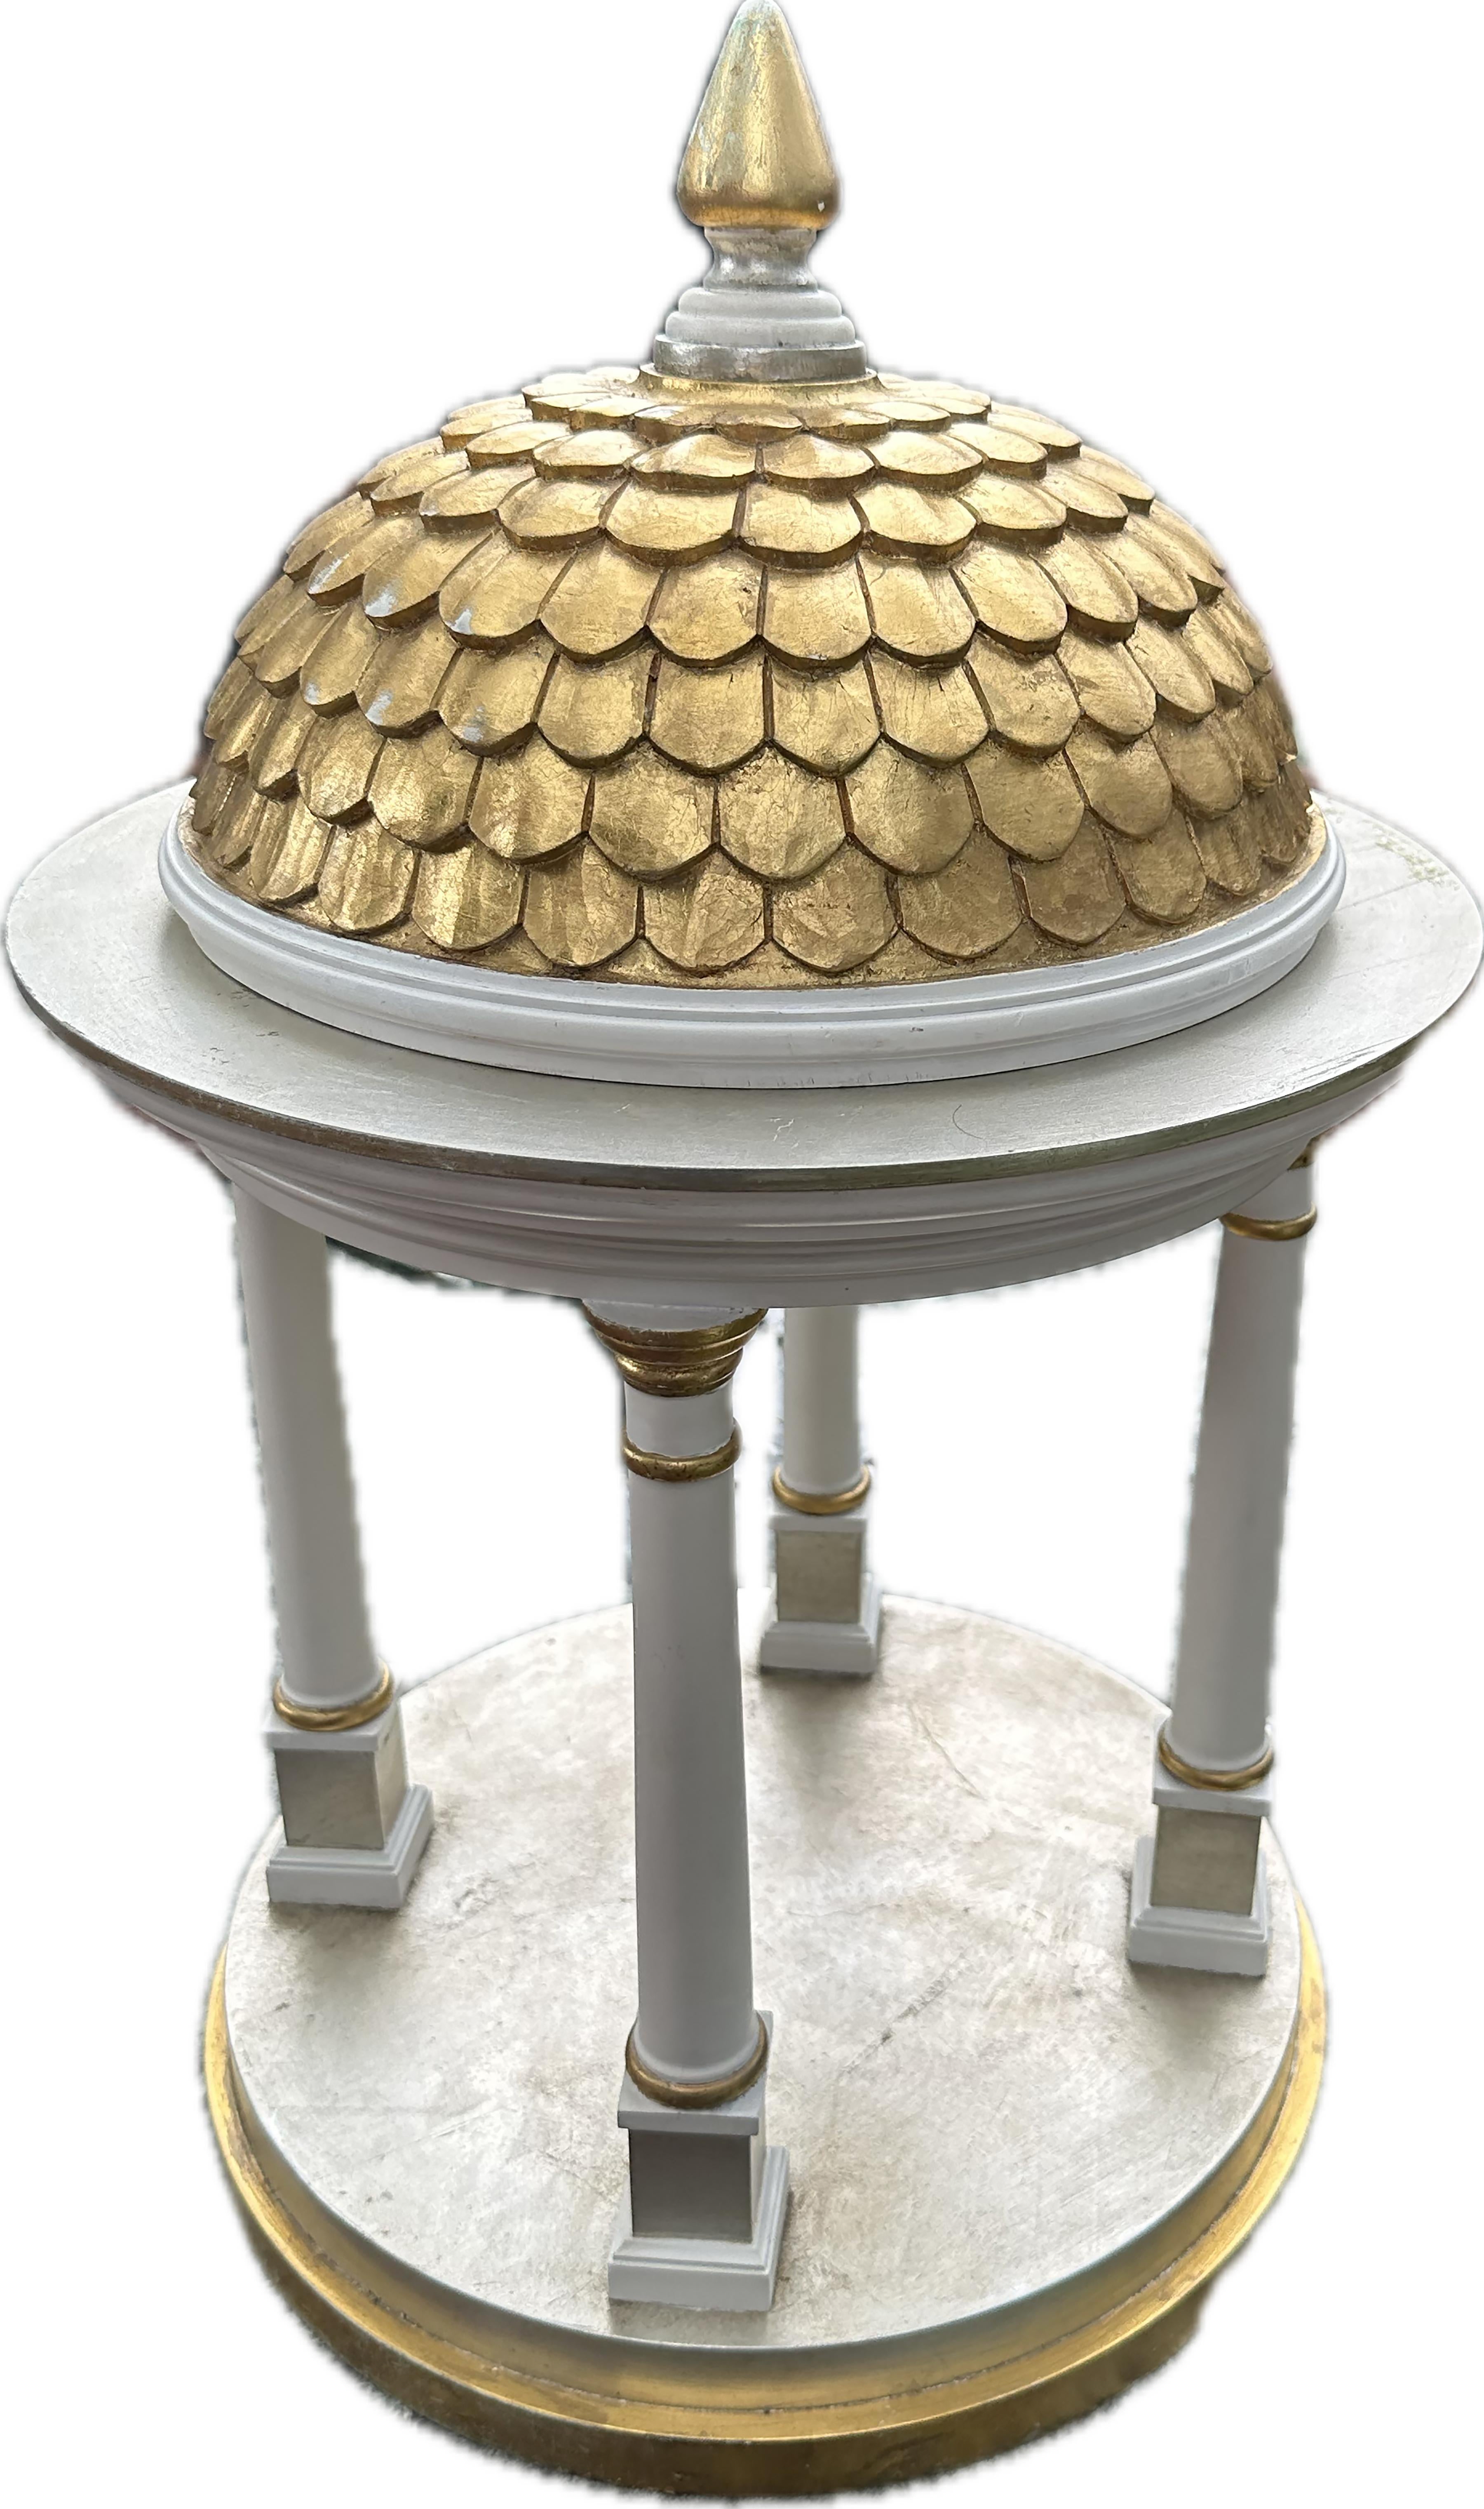 Contemporary Tempietto Style Gazebo Model with Gilt Romanesque Dome For Sale